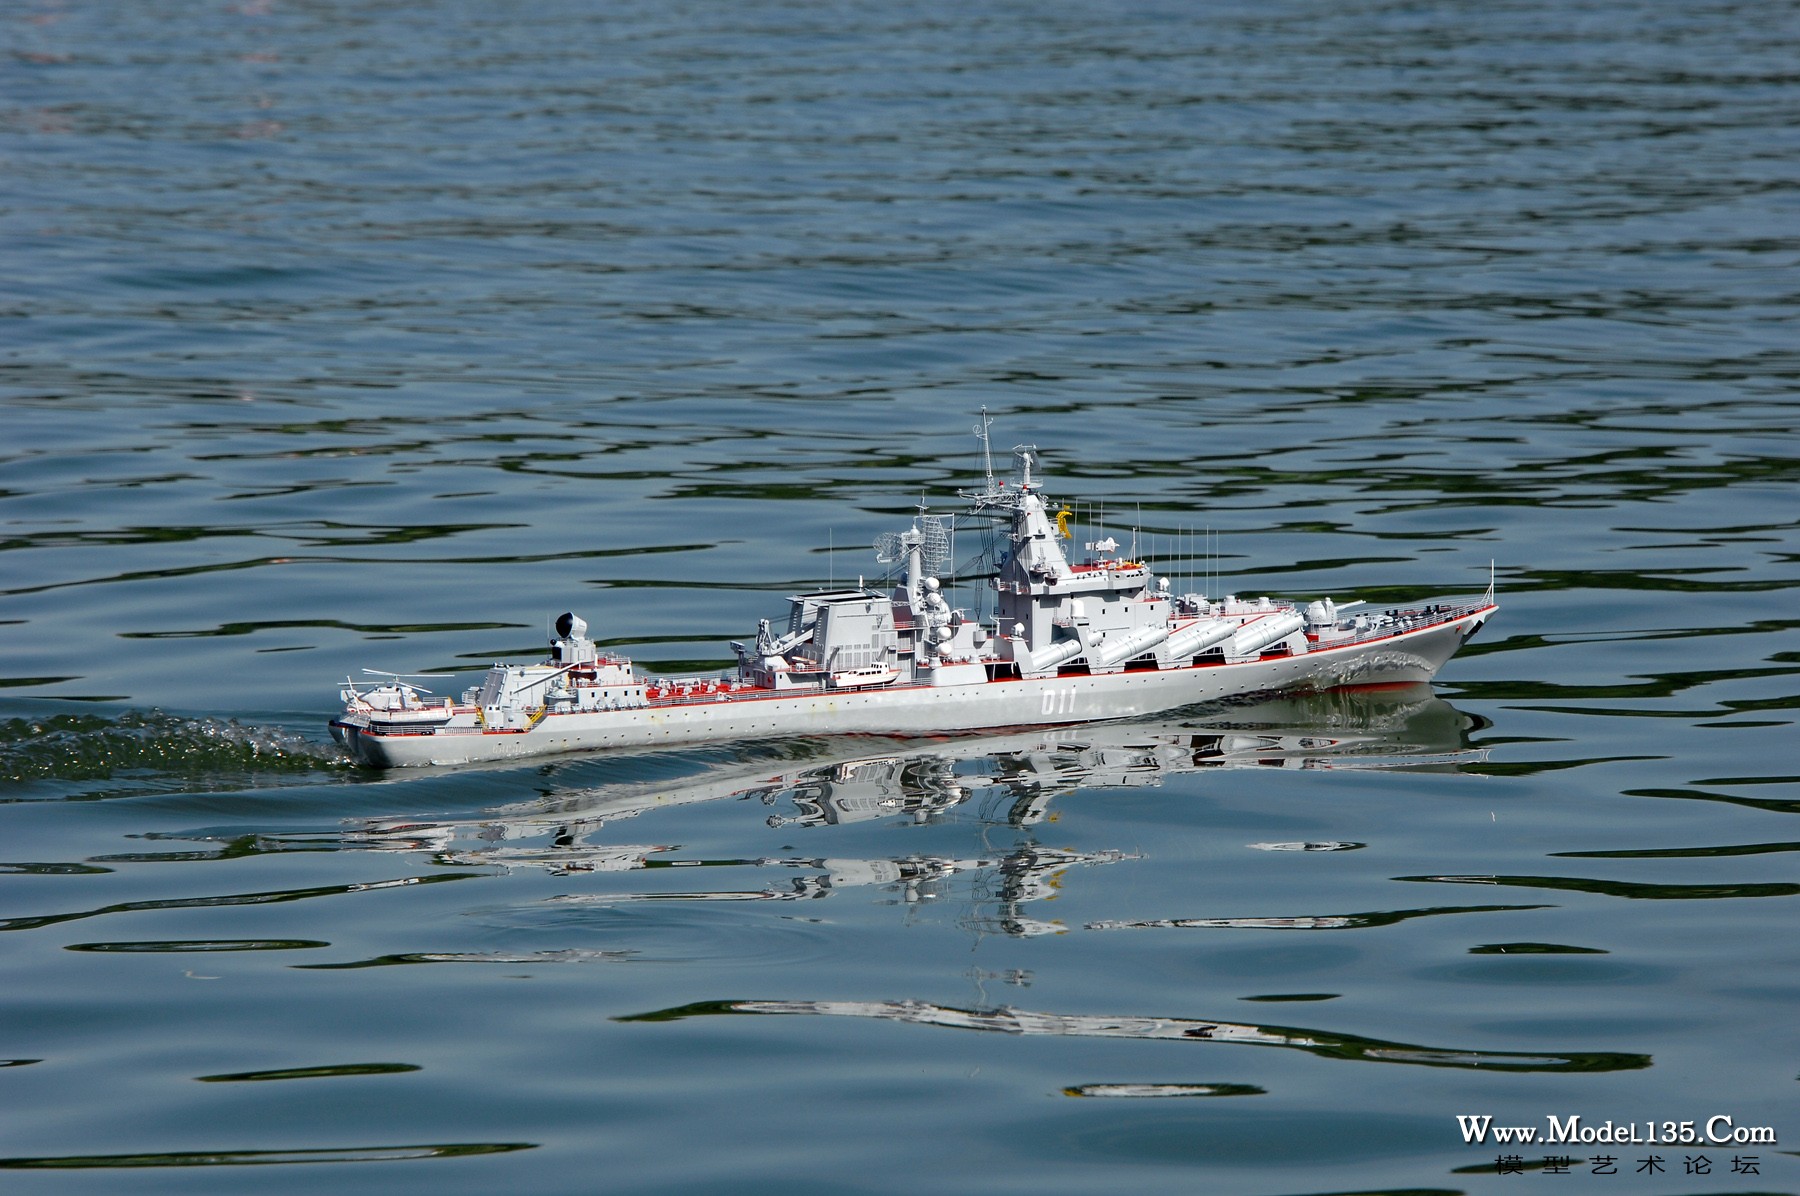 中国队的“红色乌克兰”导弹巡洋舰模型在航行竞赛中